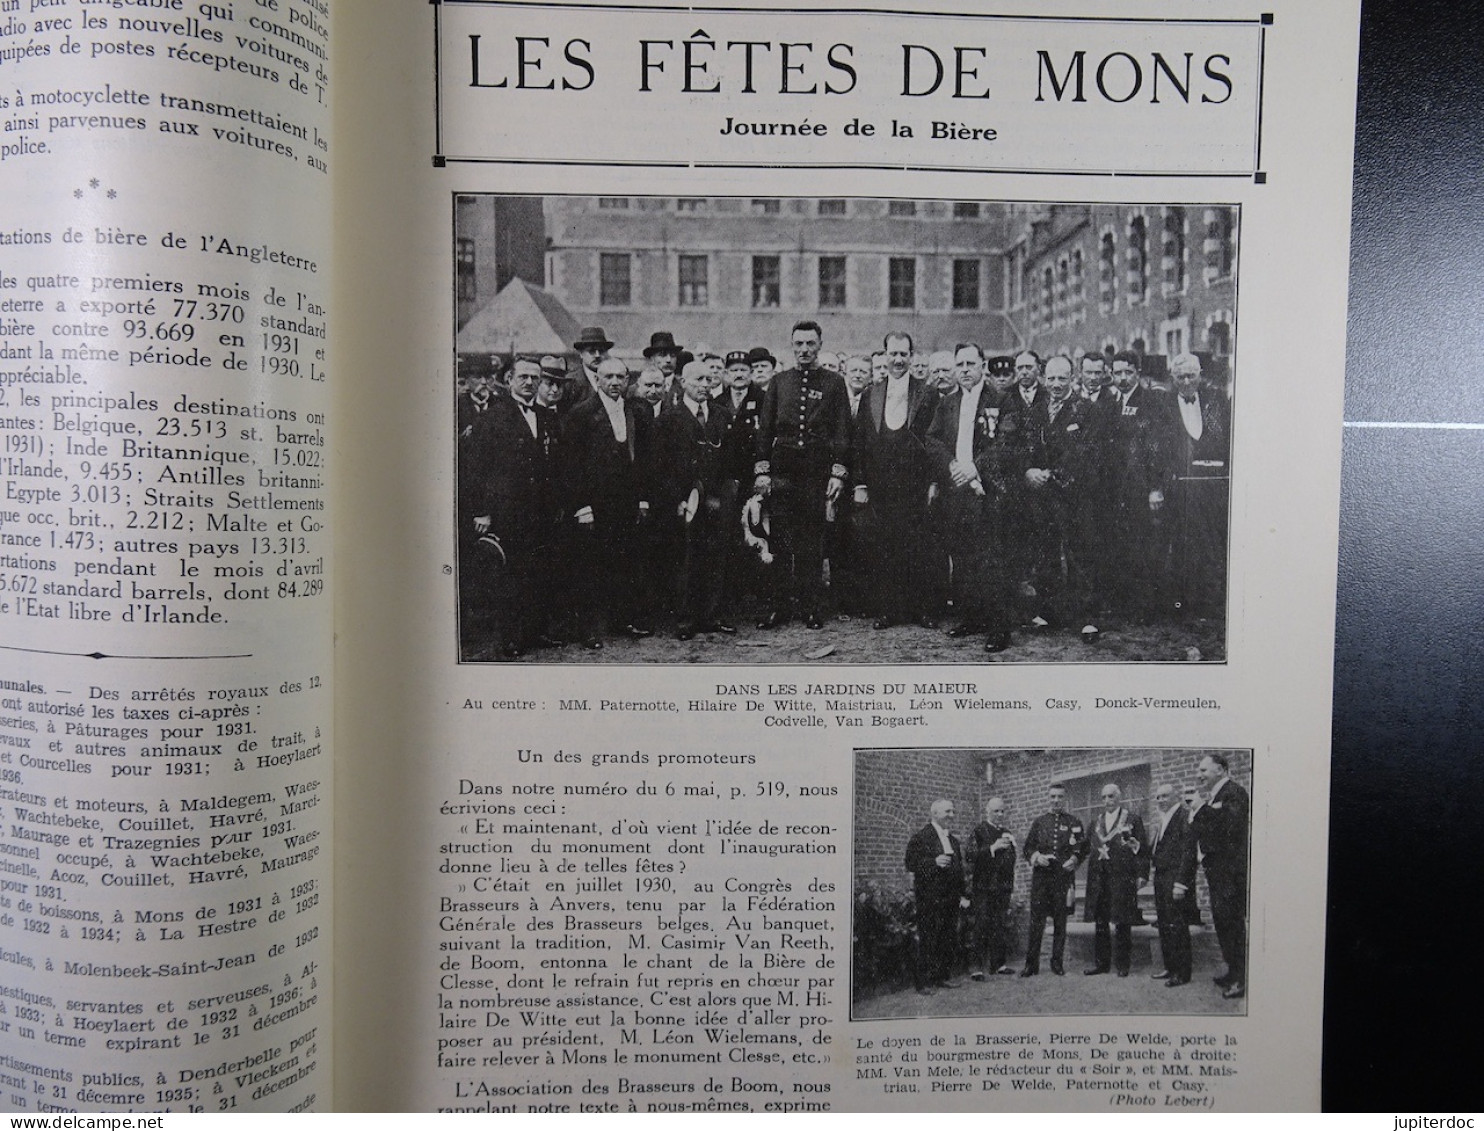 Le Petit Journal Du Brasseur N° 1677 De 1932 Pages 606 à 632 Brasserie Belgique Bières Publicité Matériel Brassage - 1900 - 1949